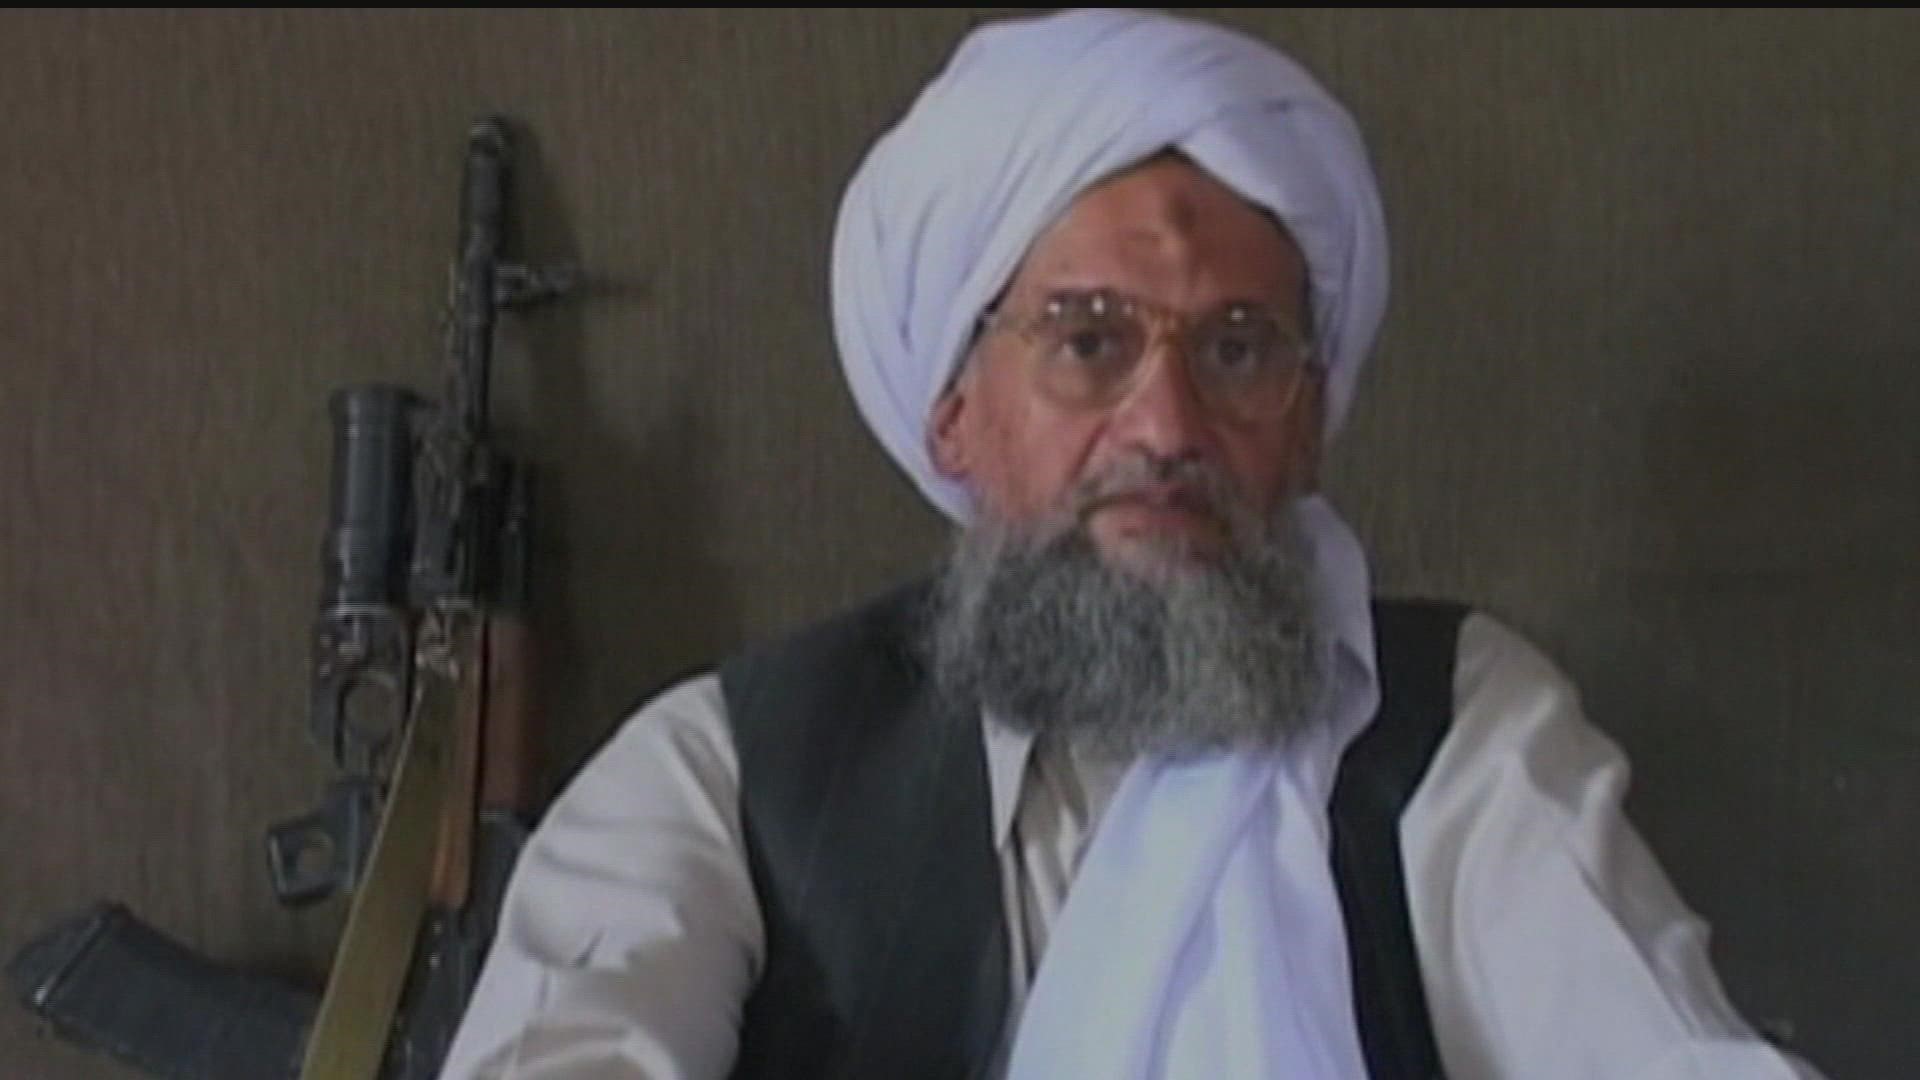 A U.S. drone strike in Afghanistan this weekend killed Ayman al-Zawahri, who took over as al-Qaida leader after Osama bin Laden’s death in a U.S. raid.